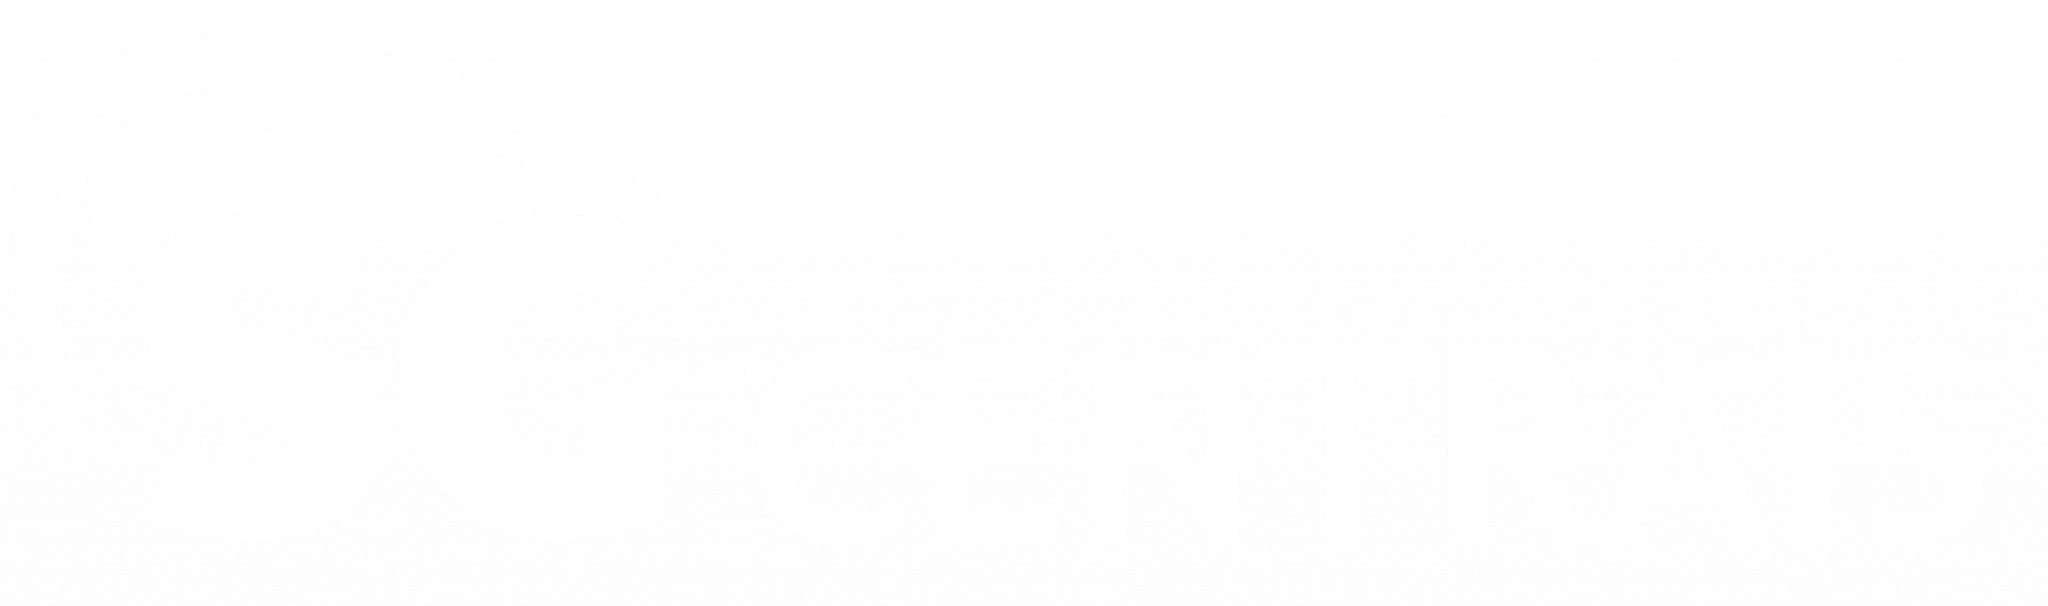 um logotipo preto e branco com as palavras sgcentrais